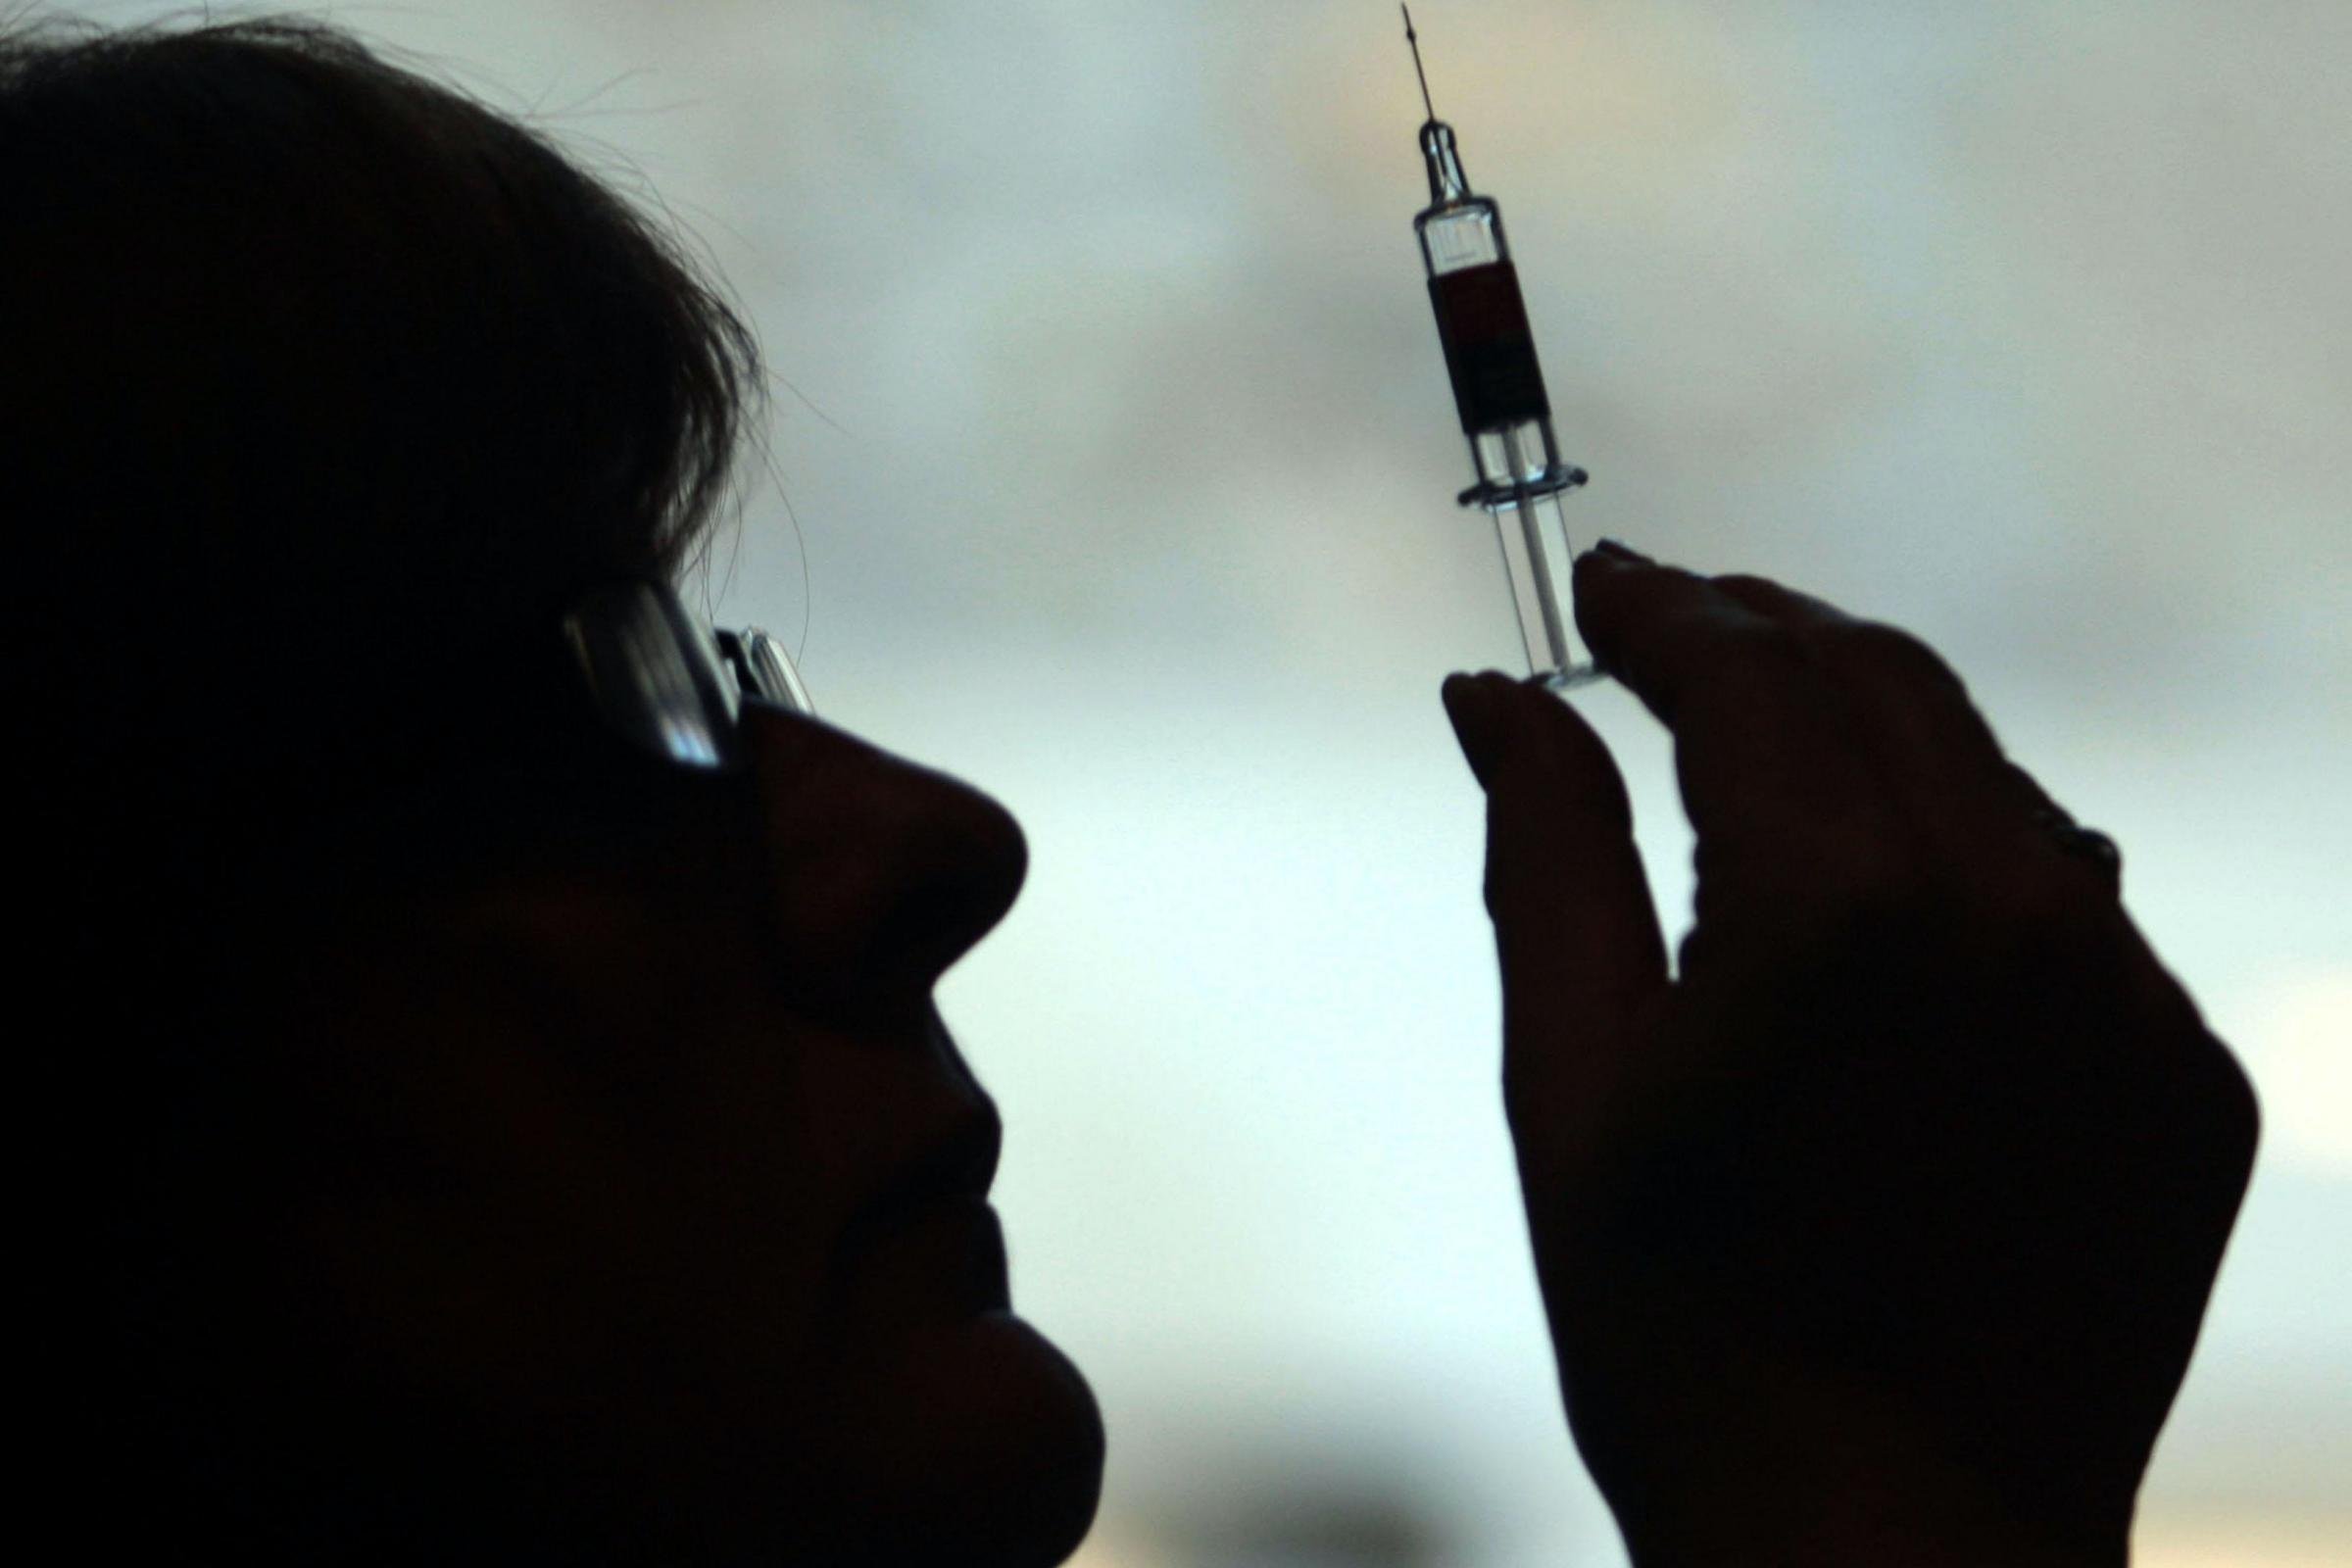 Aproape 200.000 de români s-au vaccinat împotriva Covid-19 de la debutul campaniei. 12.421 de persoane s-au imunizat în ultimele 24 de ore